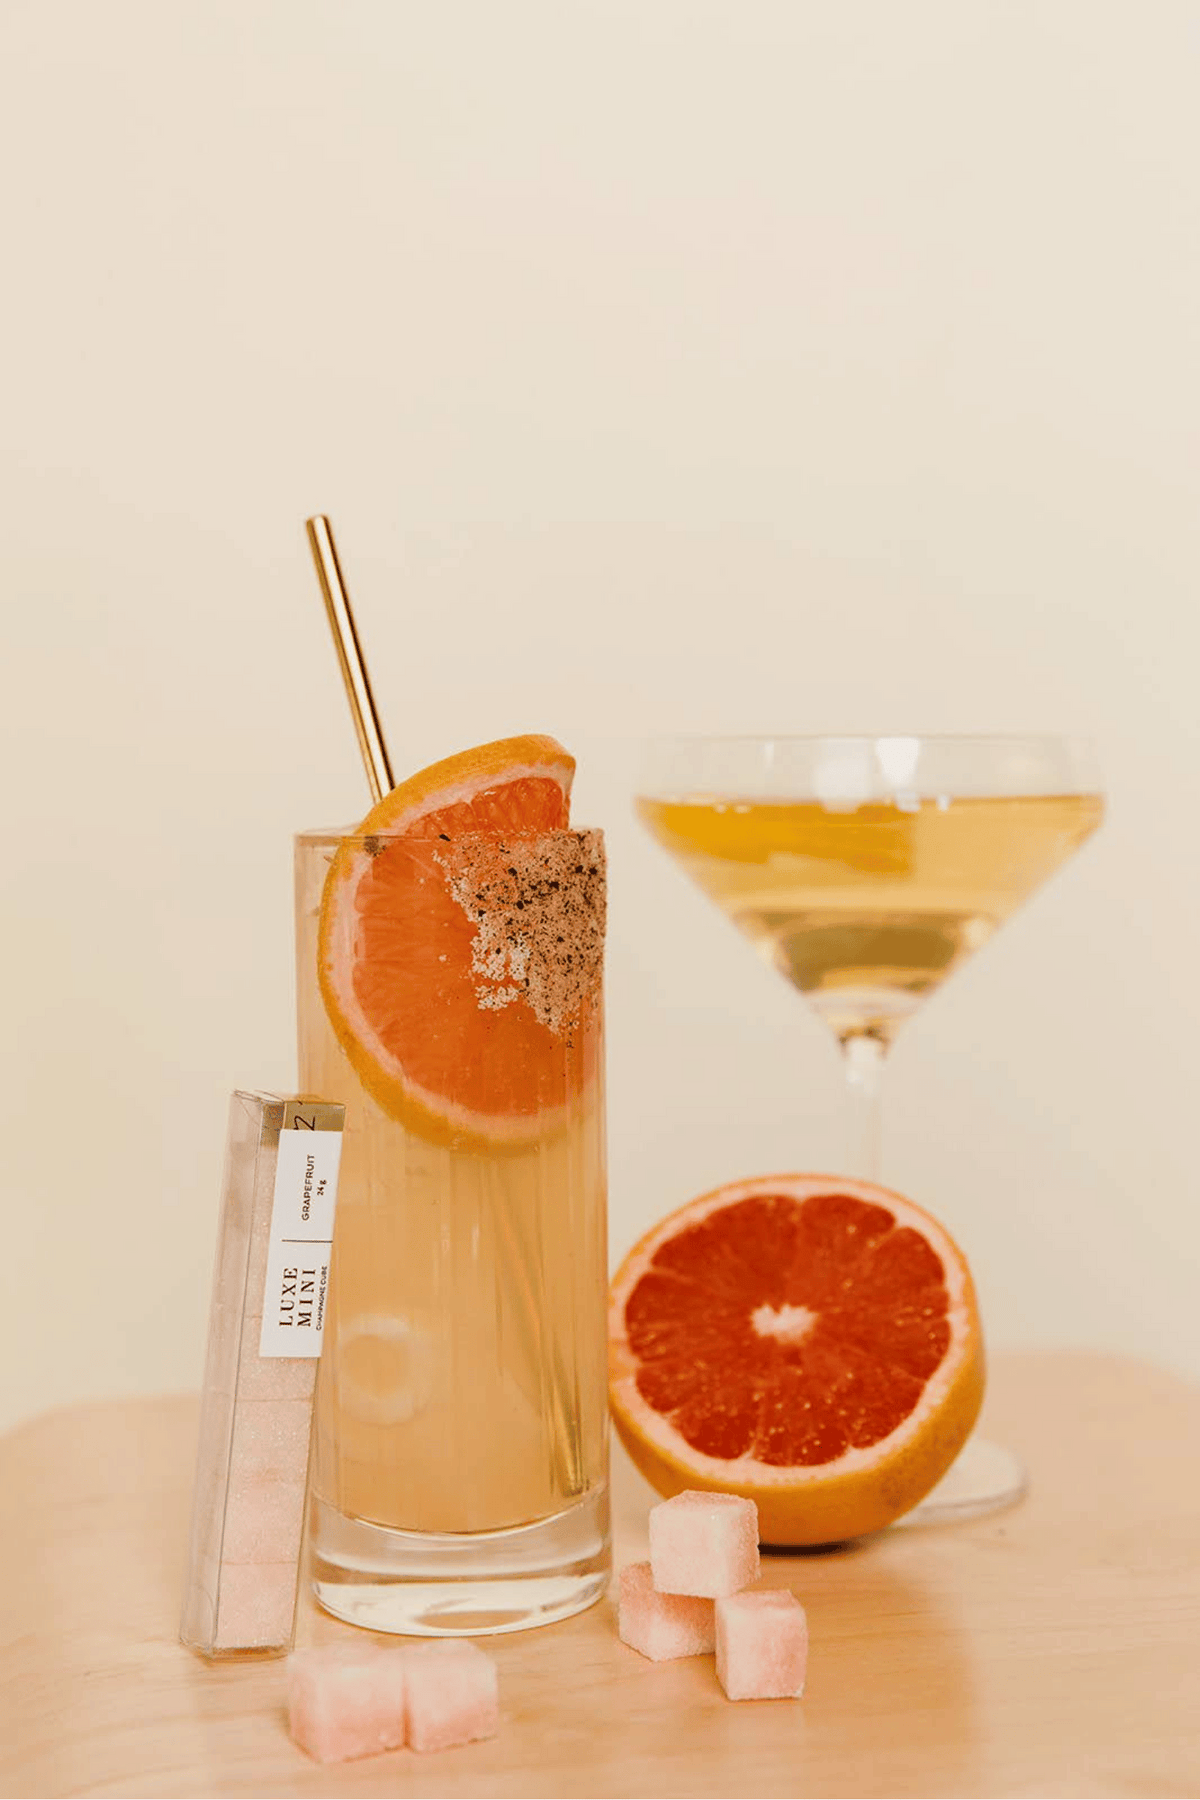 Mimosa Cocktail Kit